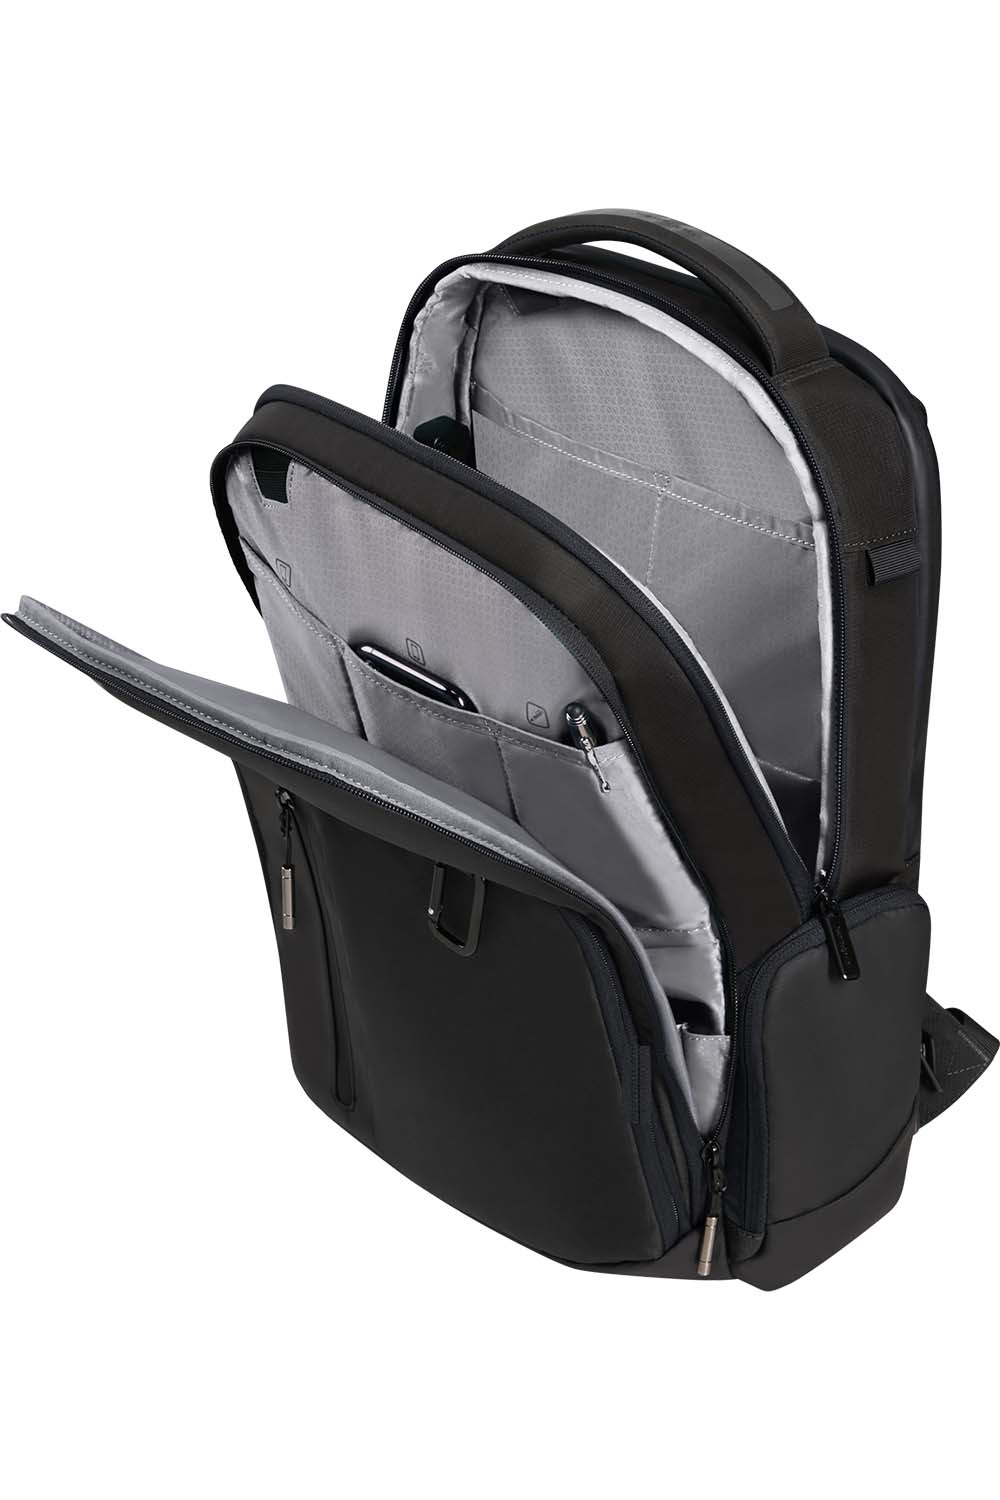 Samsonite Biz2go Backpack תיק גב למחשב נייד 14.1"